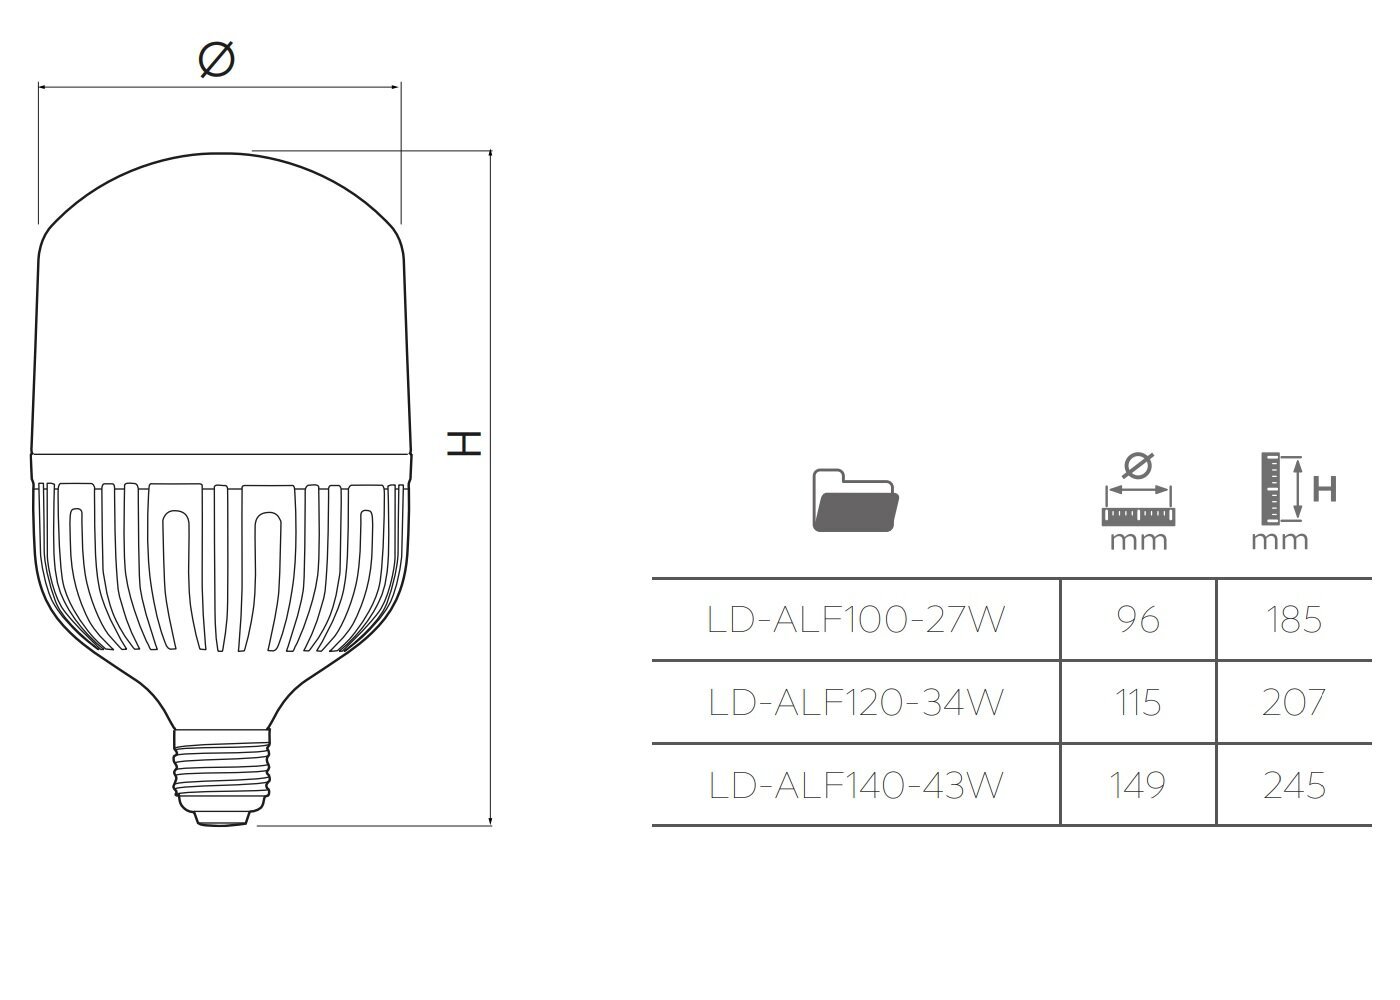 LED lemputė F140 43W, 4600lm, E40, AC 230V 50/60 4000K, LD-ALF140-43W, GTV kaina ir informacija | Elektros lemputės | pigu.lt